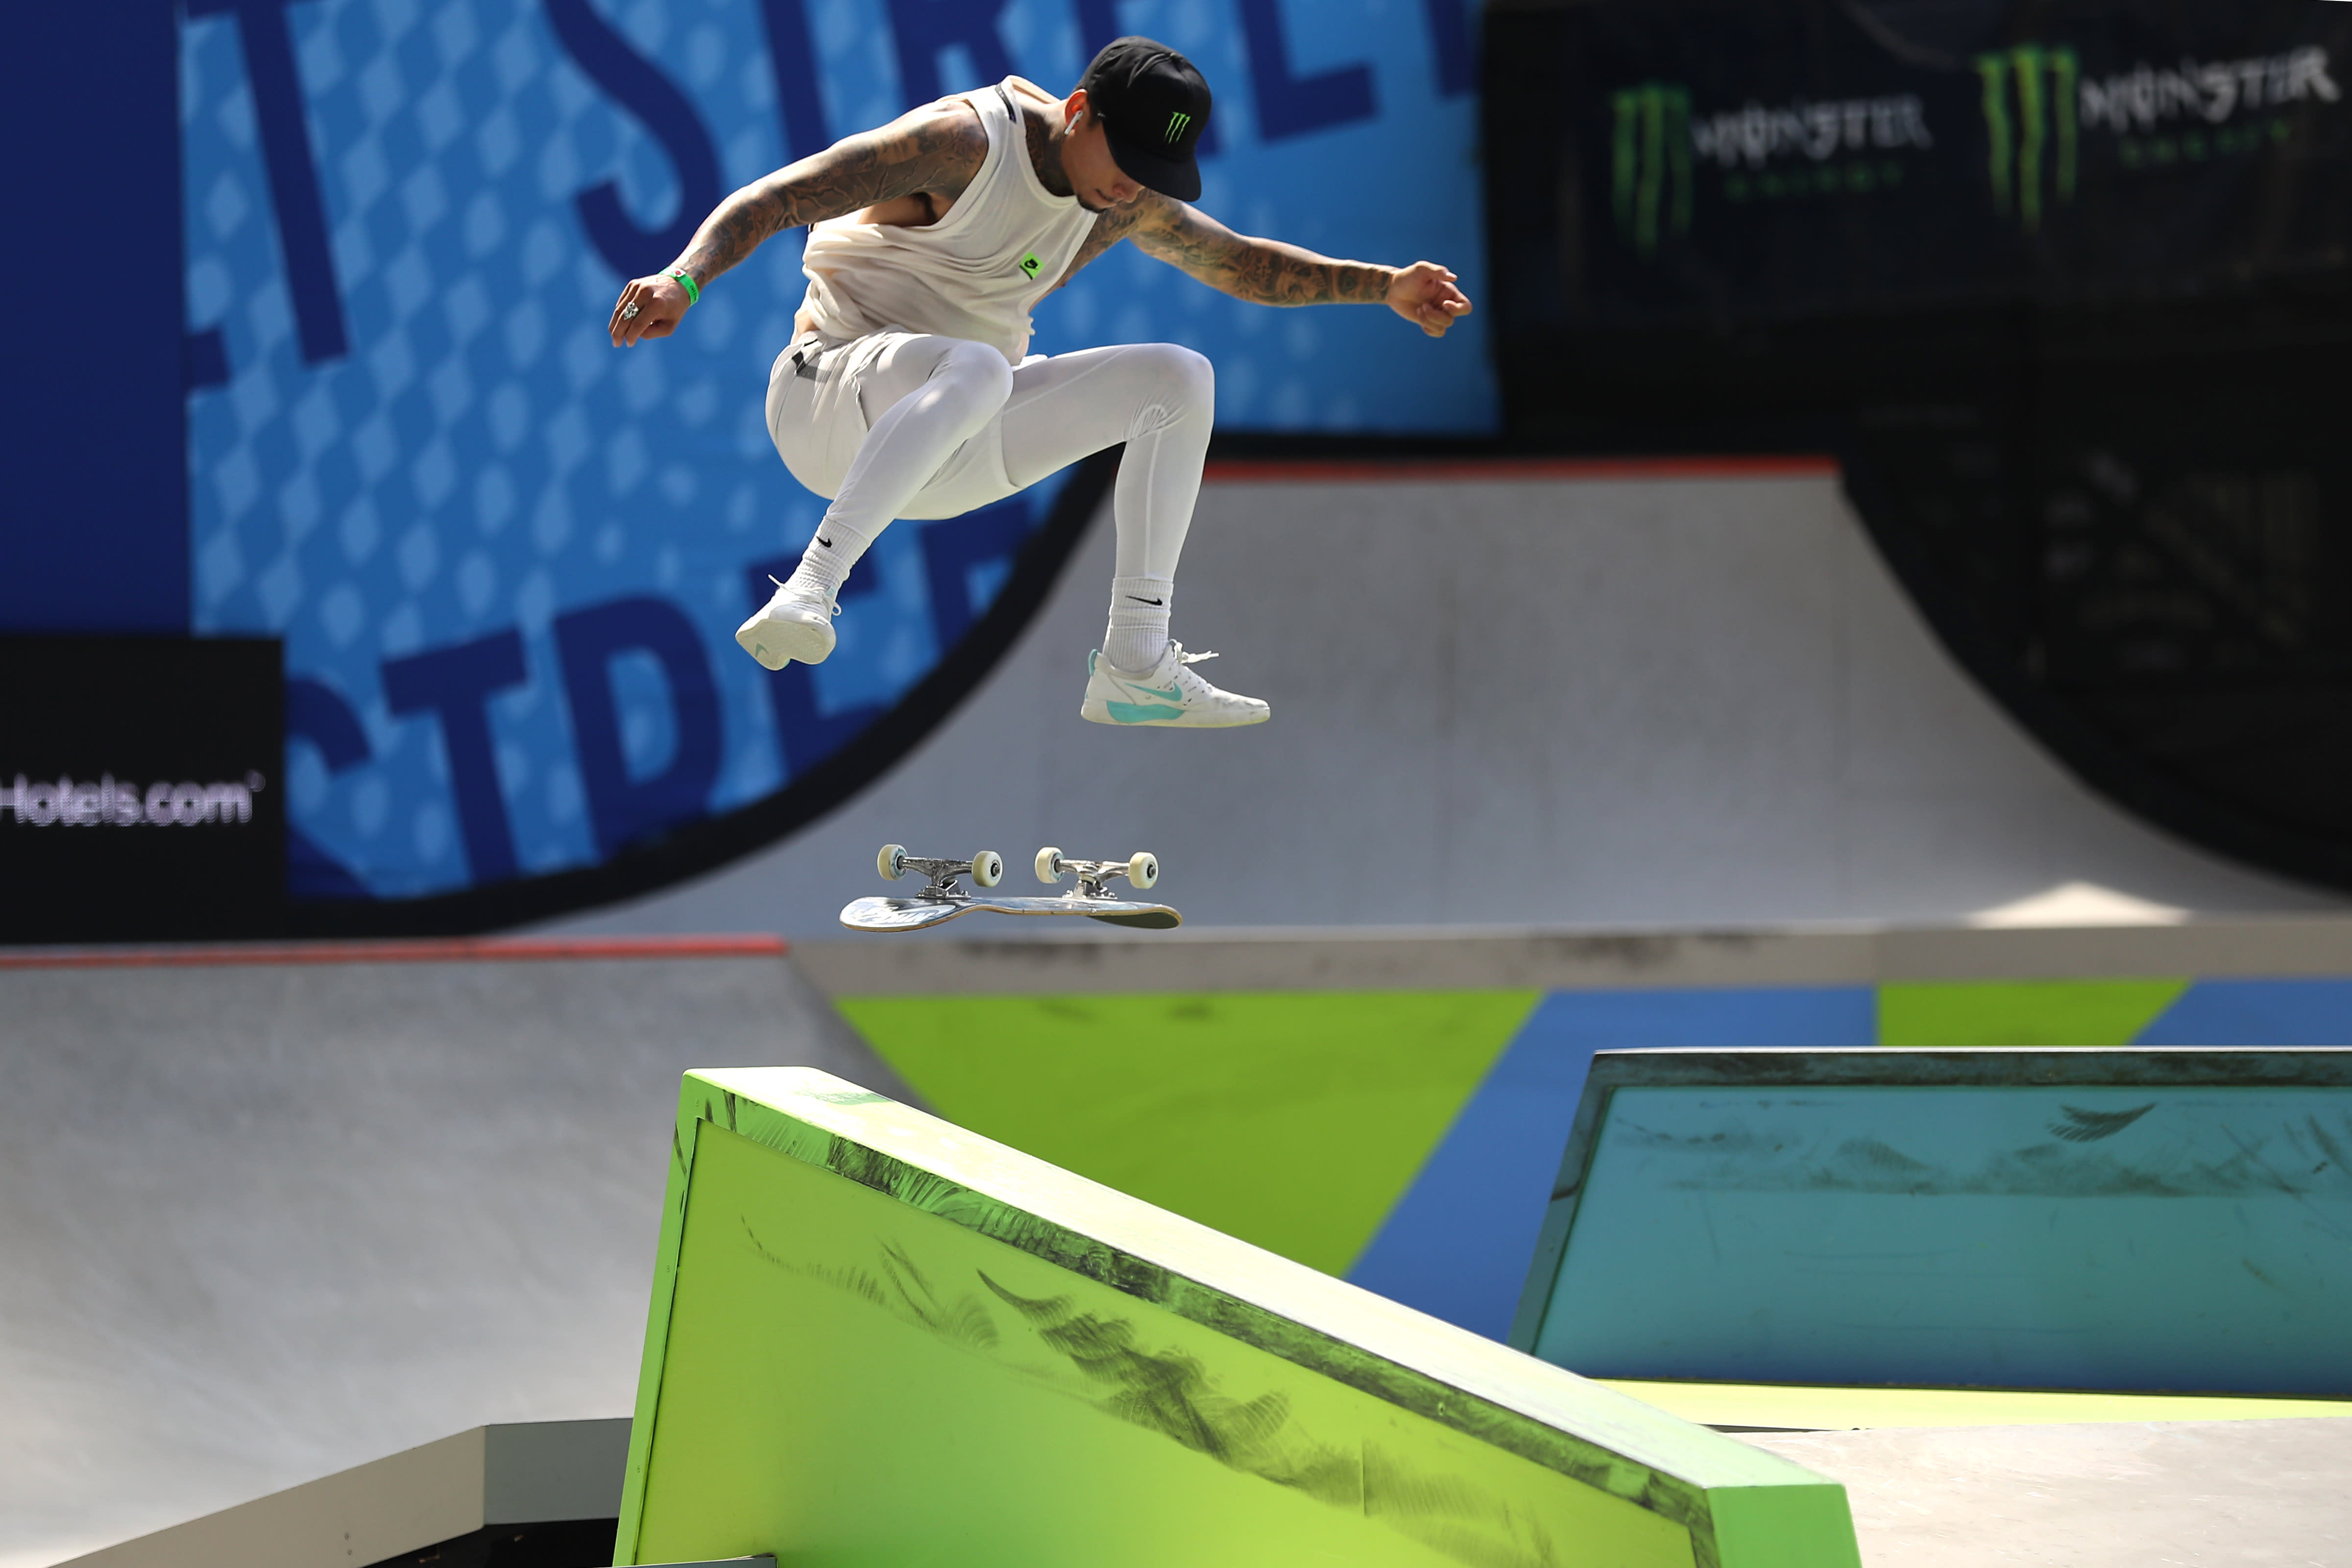 klep Ontvanger uitgehongerd World's top skateboarder Nyjah Huston on going to the Olympics